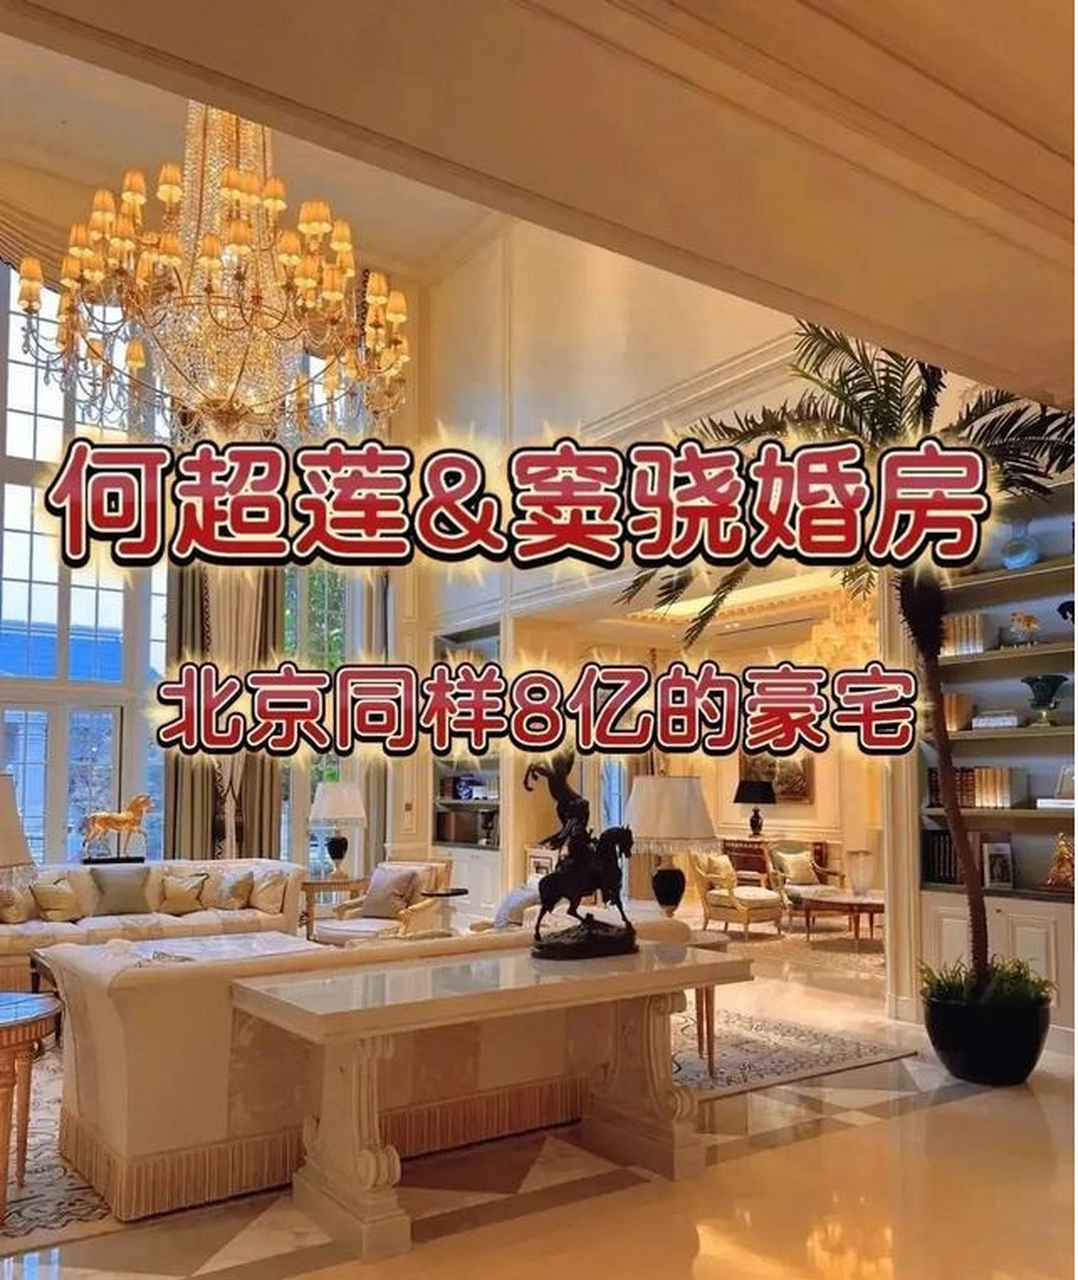 近期,窦骁与何超莲北京8亿豪宅在网络疯传,硕大的花园,富丽堂皇的装饰